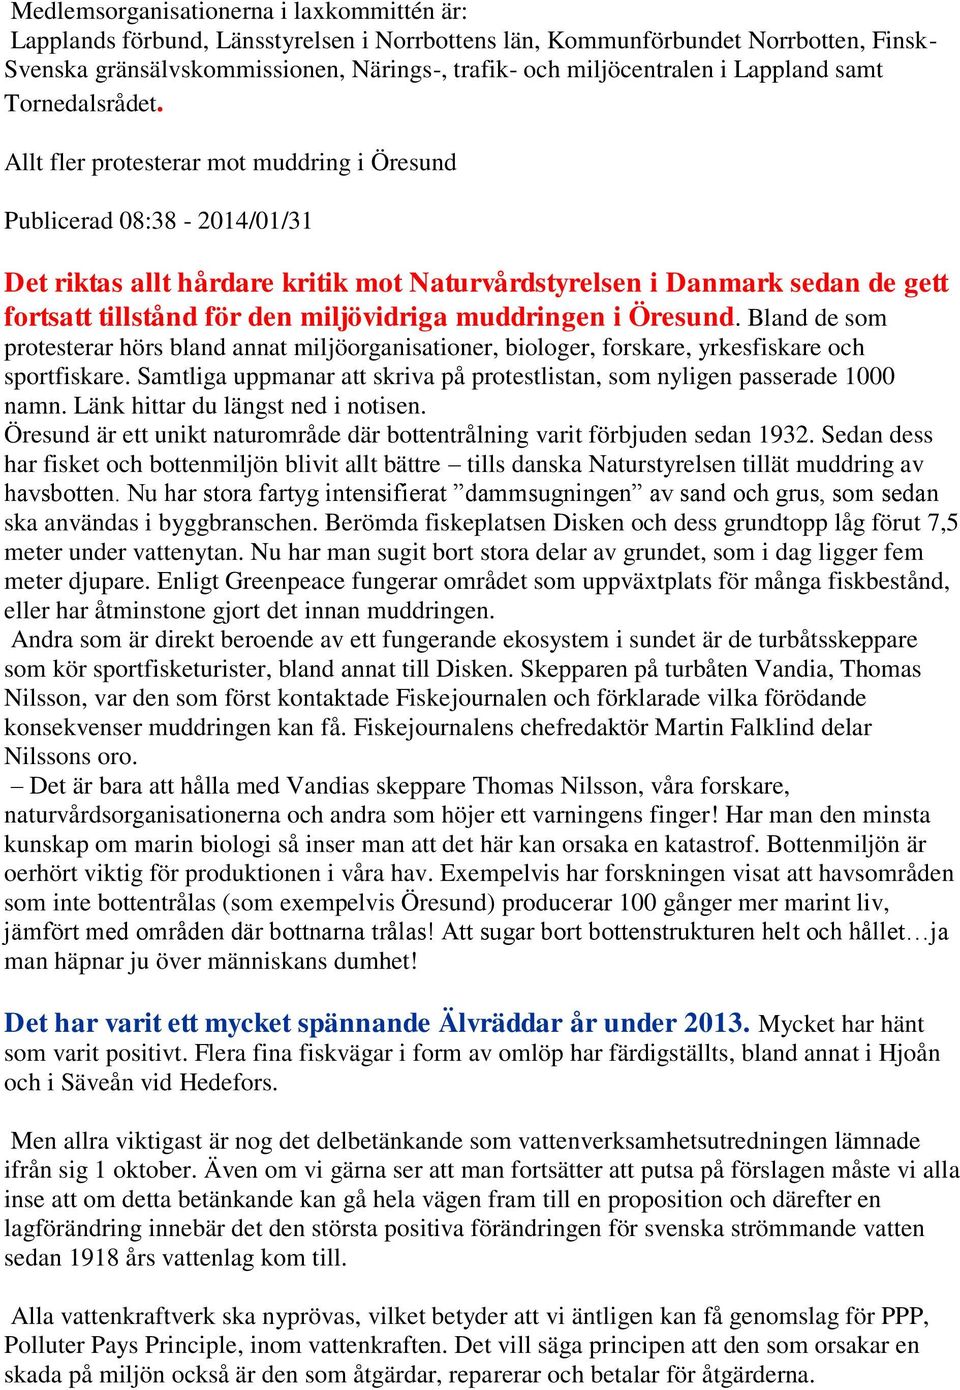 Allt fler protesterar mot muddring i Öresund Publicerad 08:38-2014/01/31 Det riktas allt hårdare kritik mot Naturvårdstyrelsen i Danmark sedan de gett fortsatt tillstånd för den miljövidriga